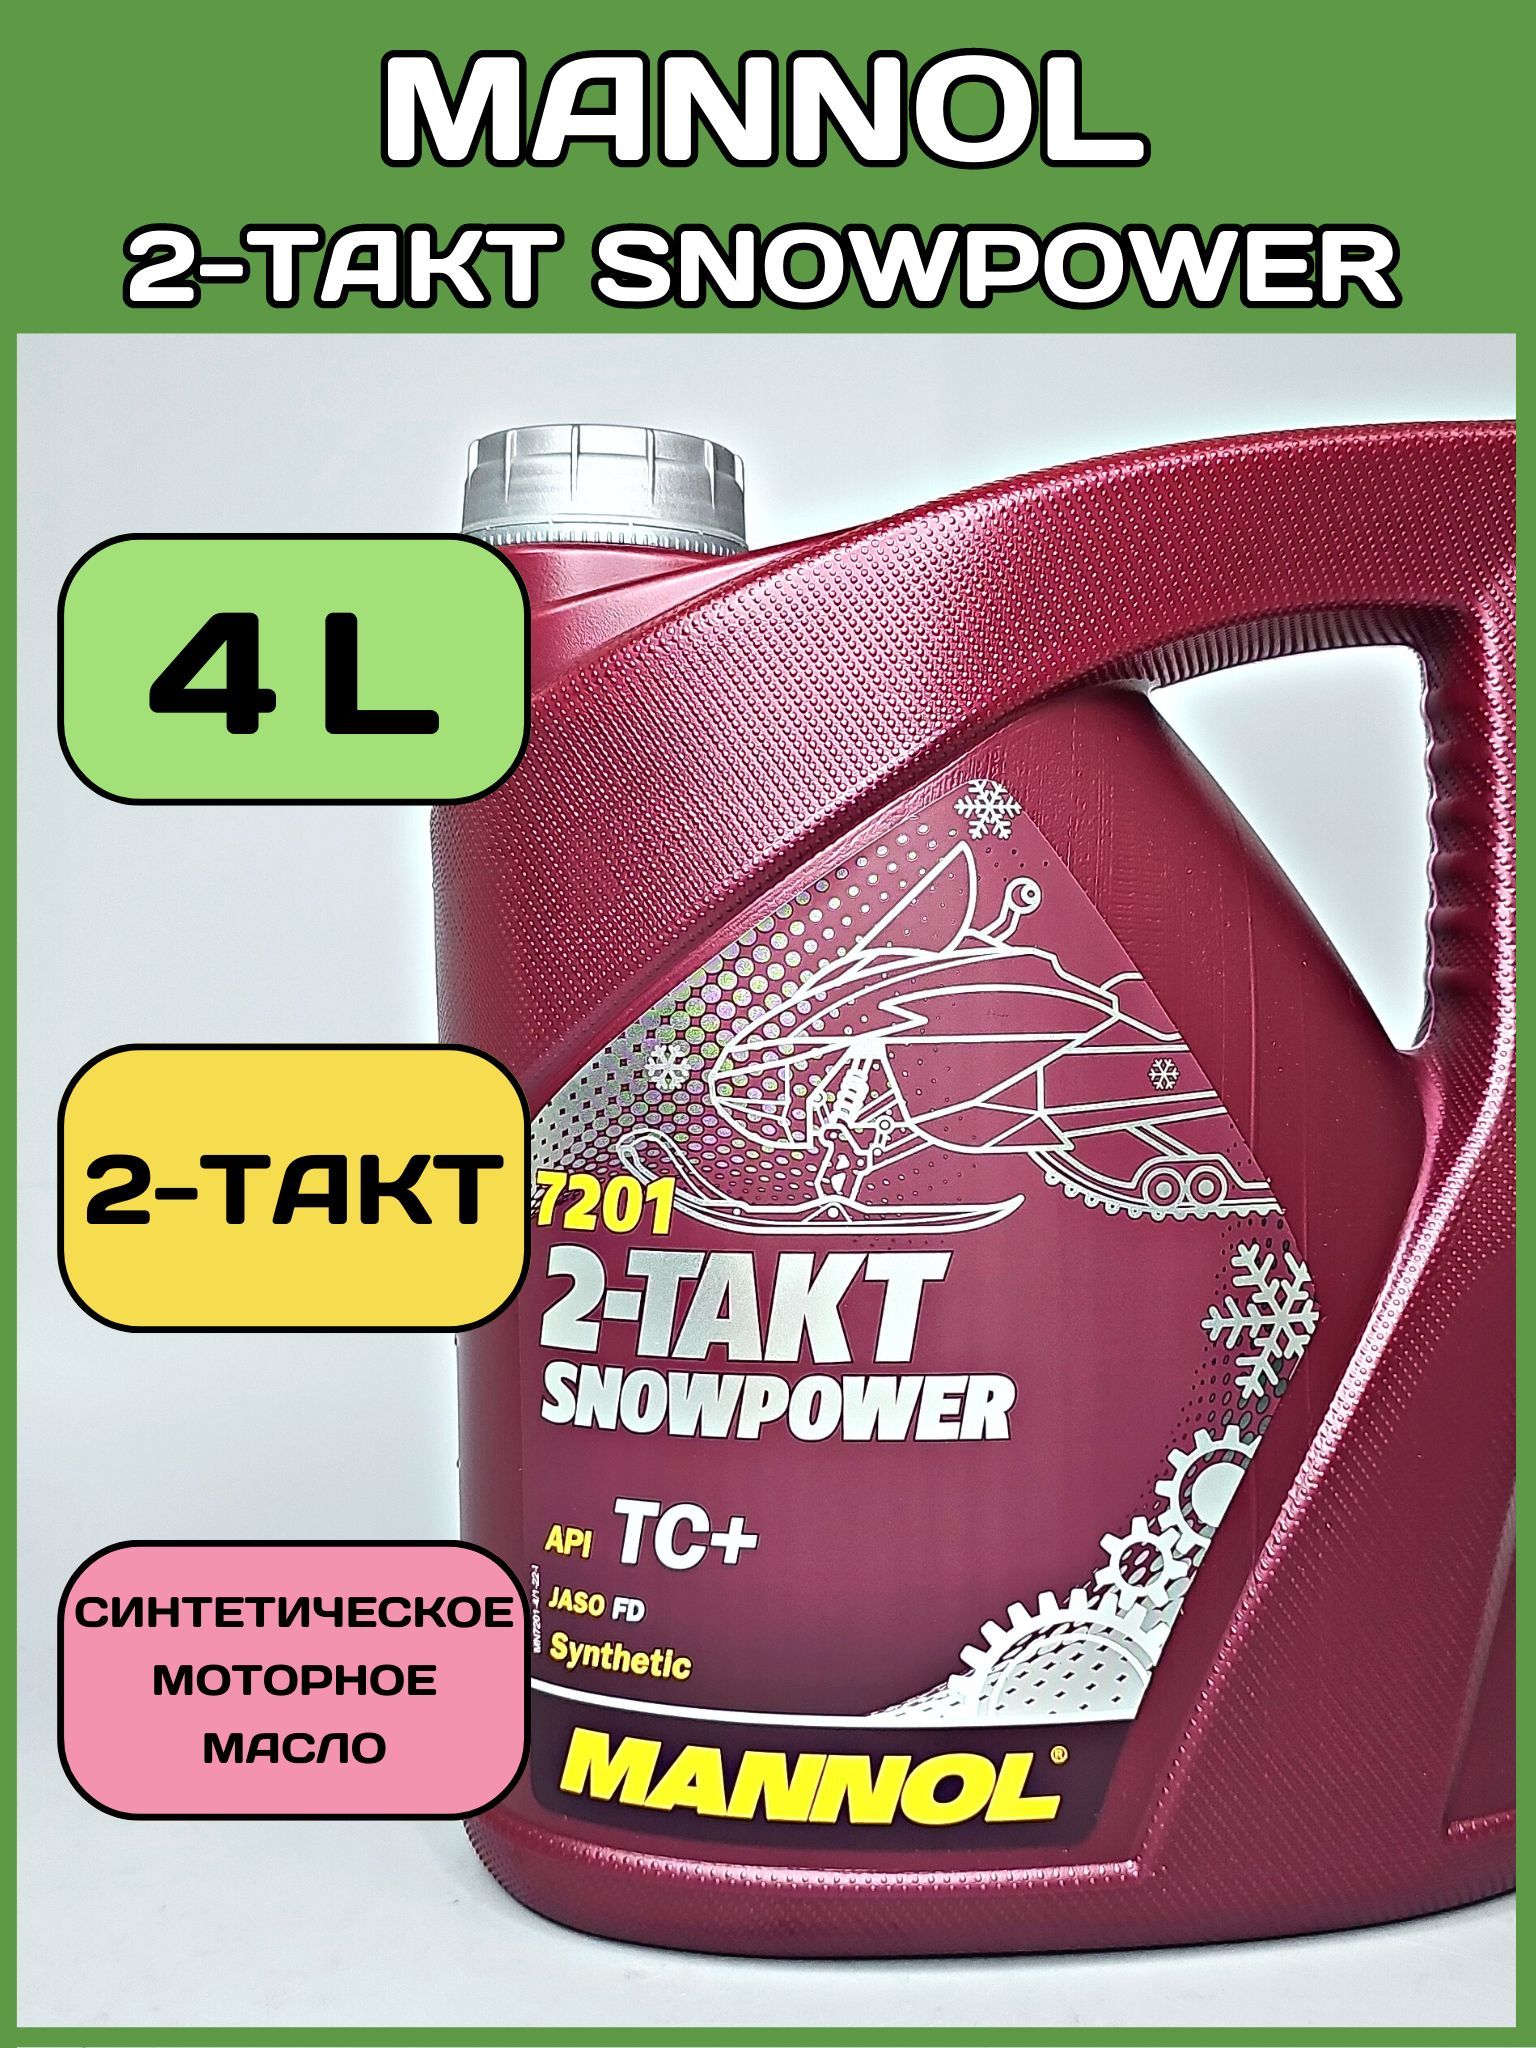 Annol масло моторное 2-Takt Snowpower. Масло 2т синтетика. Annol масло моторное 20 л. 2-Takt Snowpower. 2т полусинтетическое масло